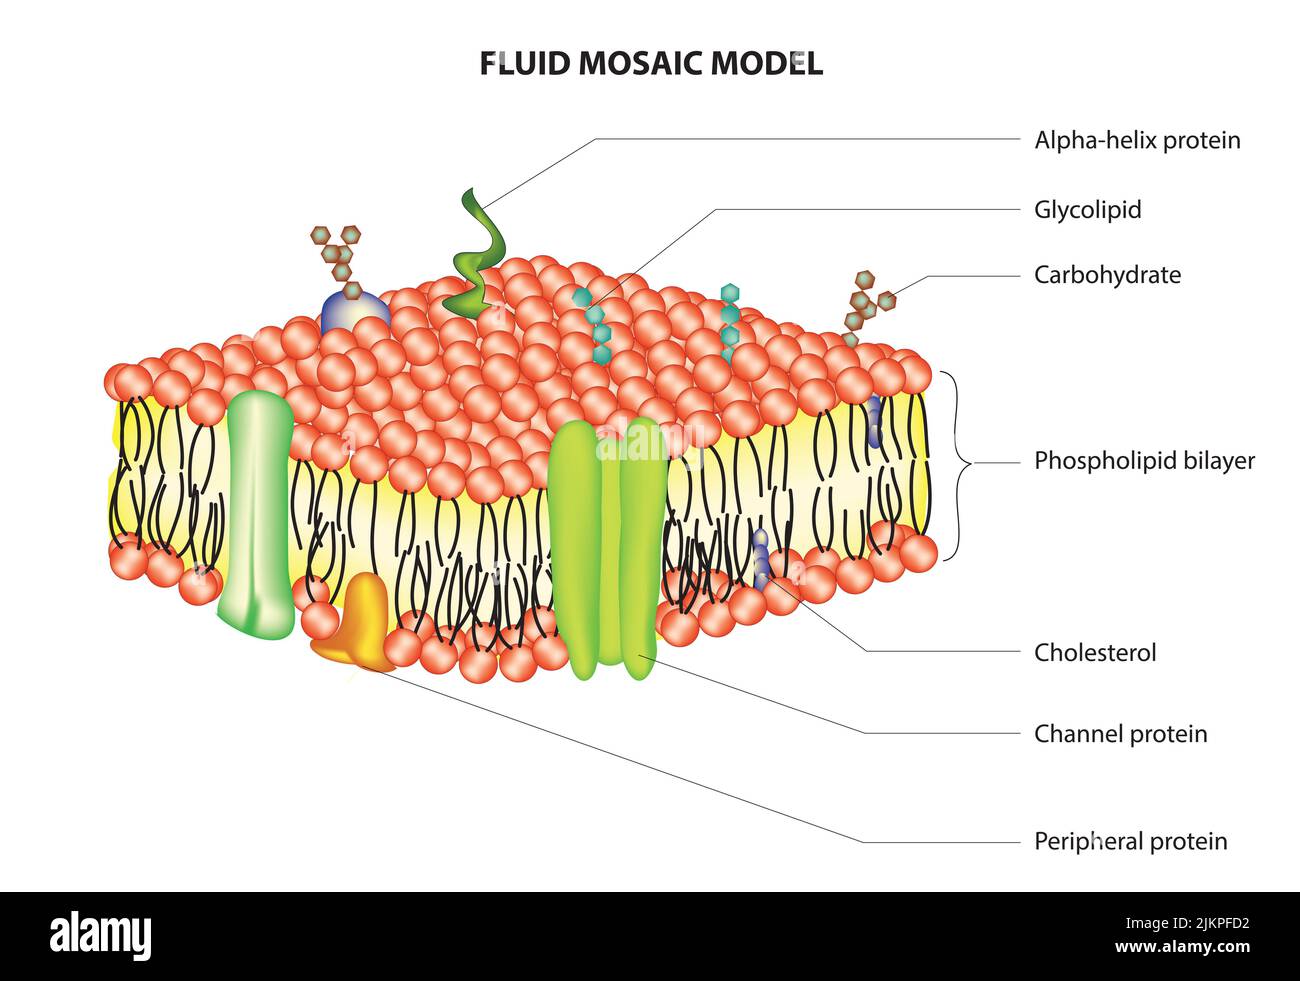 Modelo de mosaico fluido de membrana celular Foto de stock